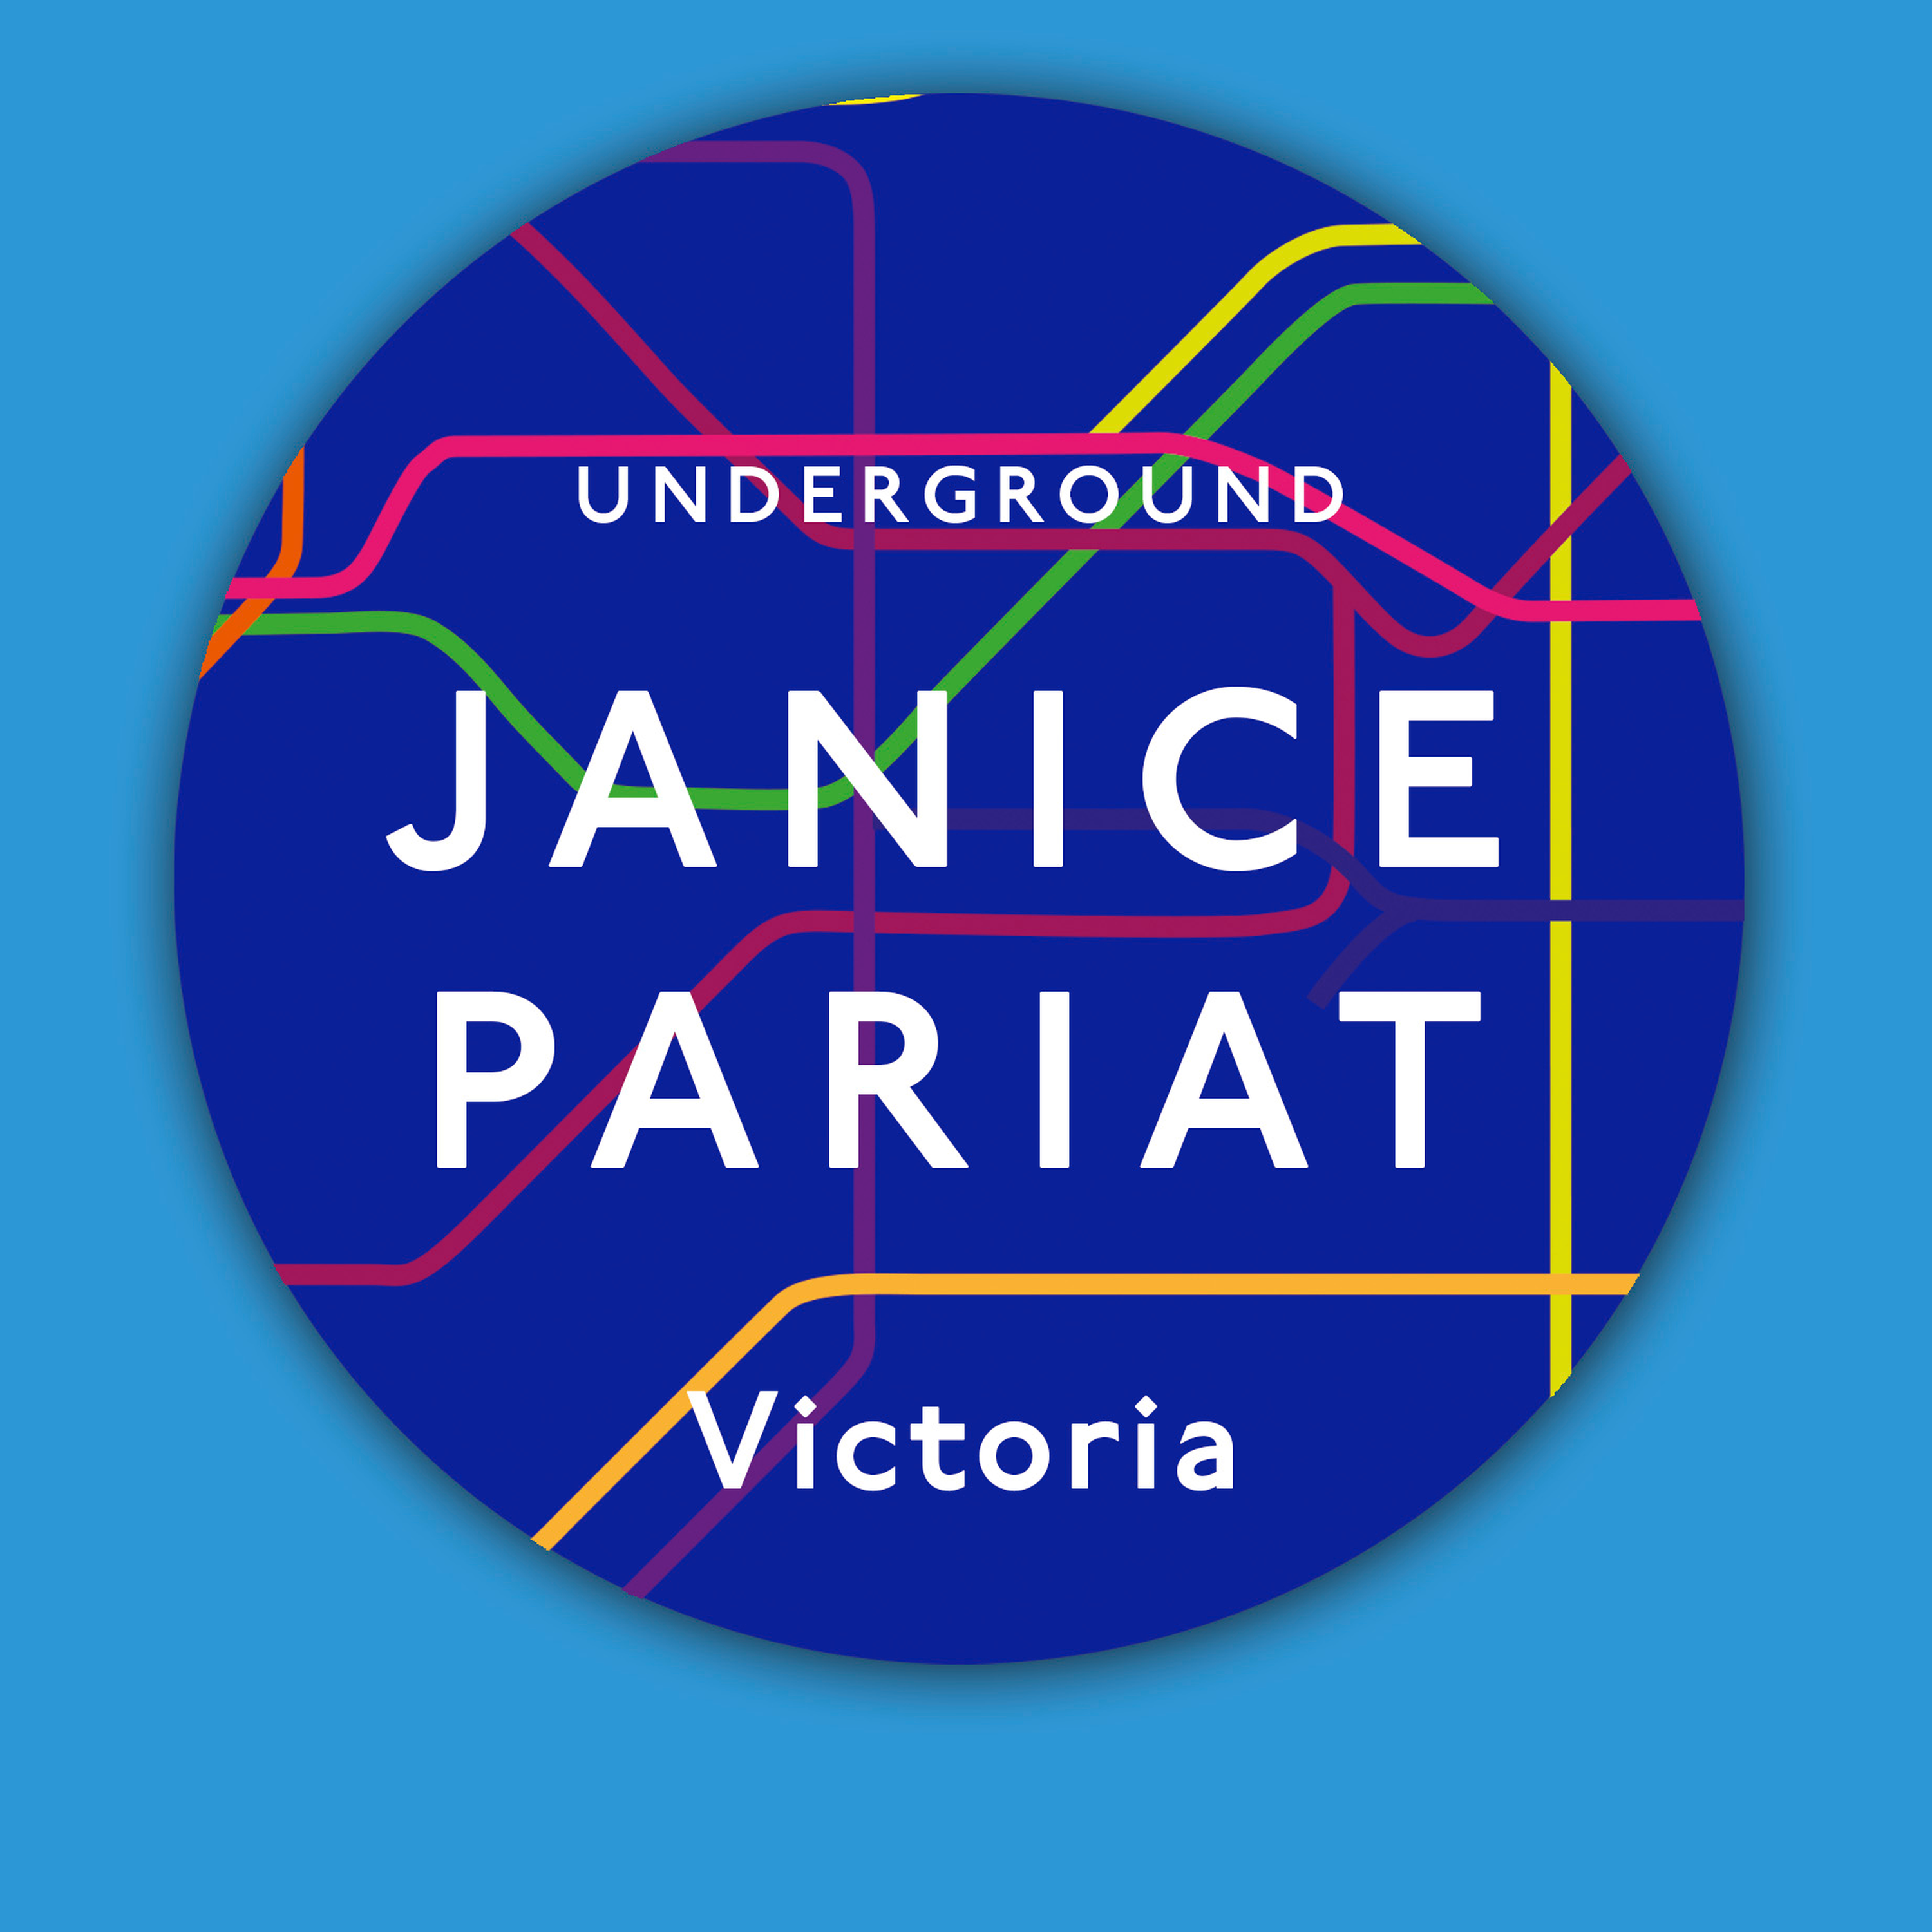 Victoria - Janice Pariat